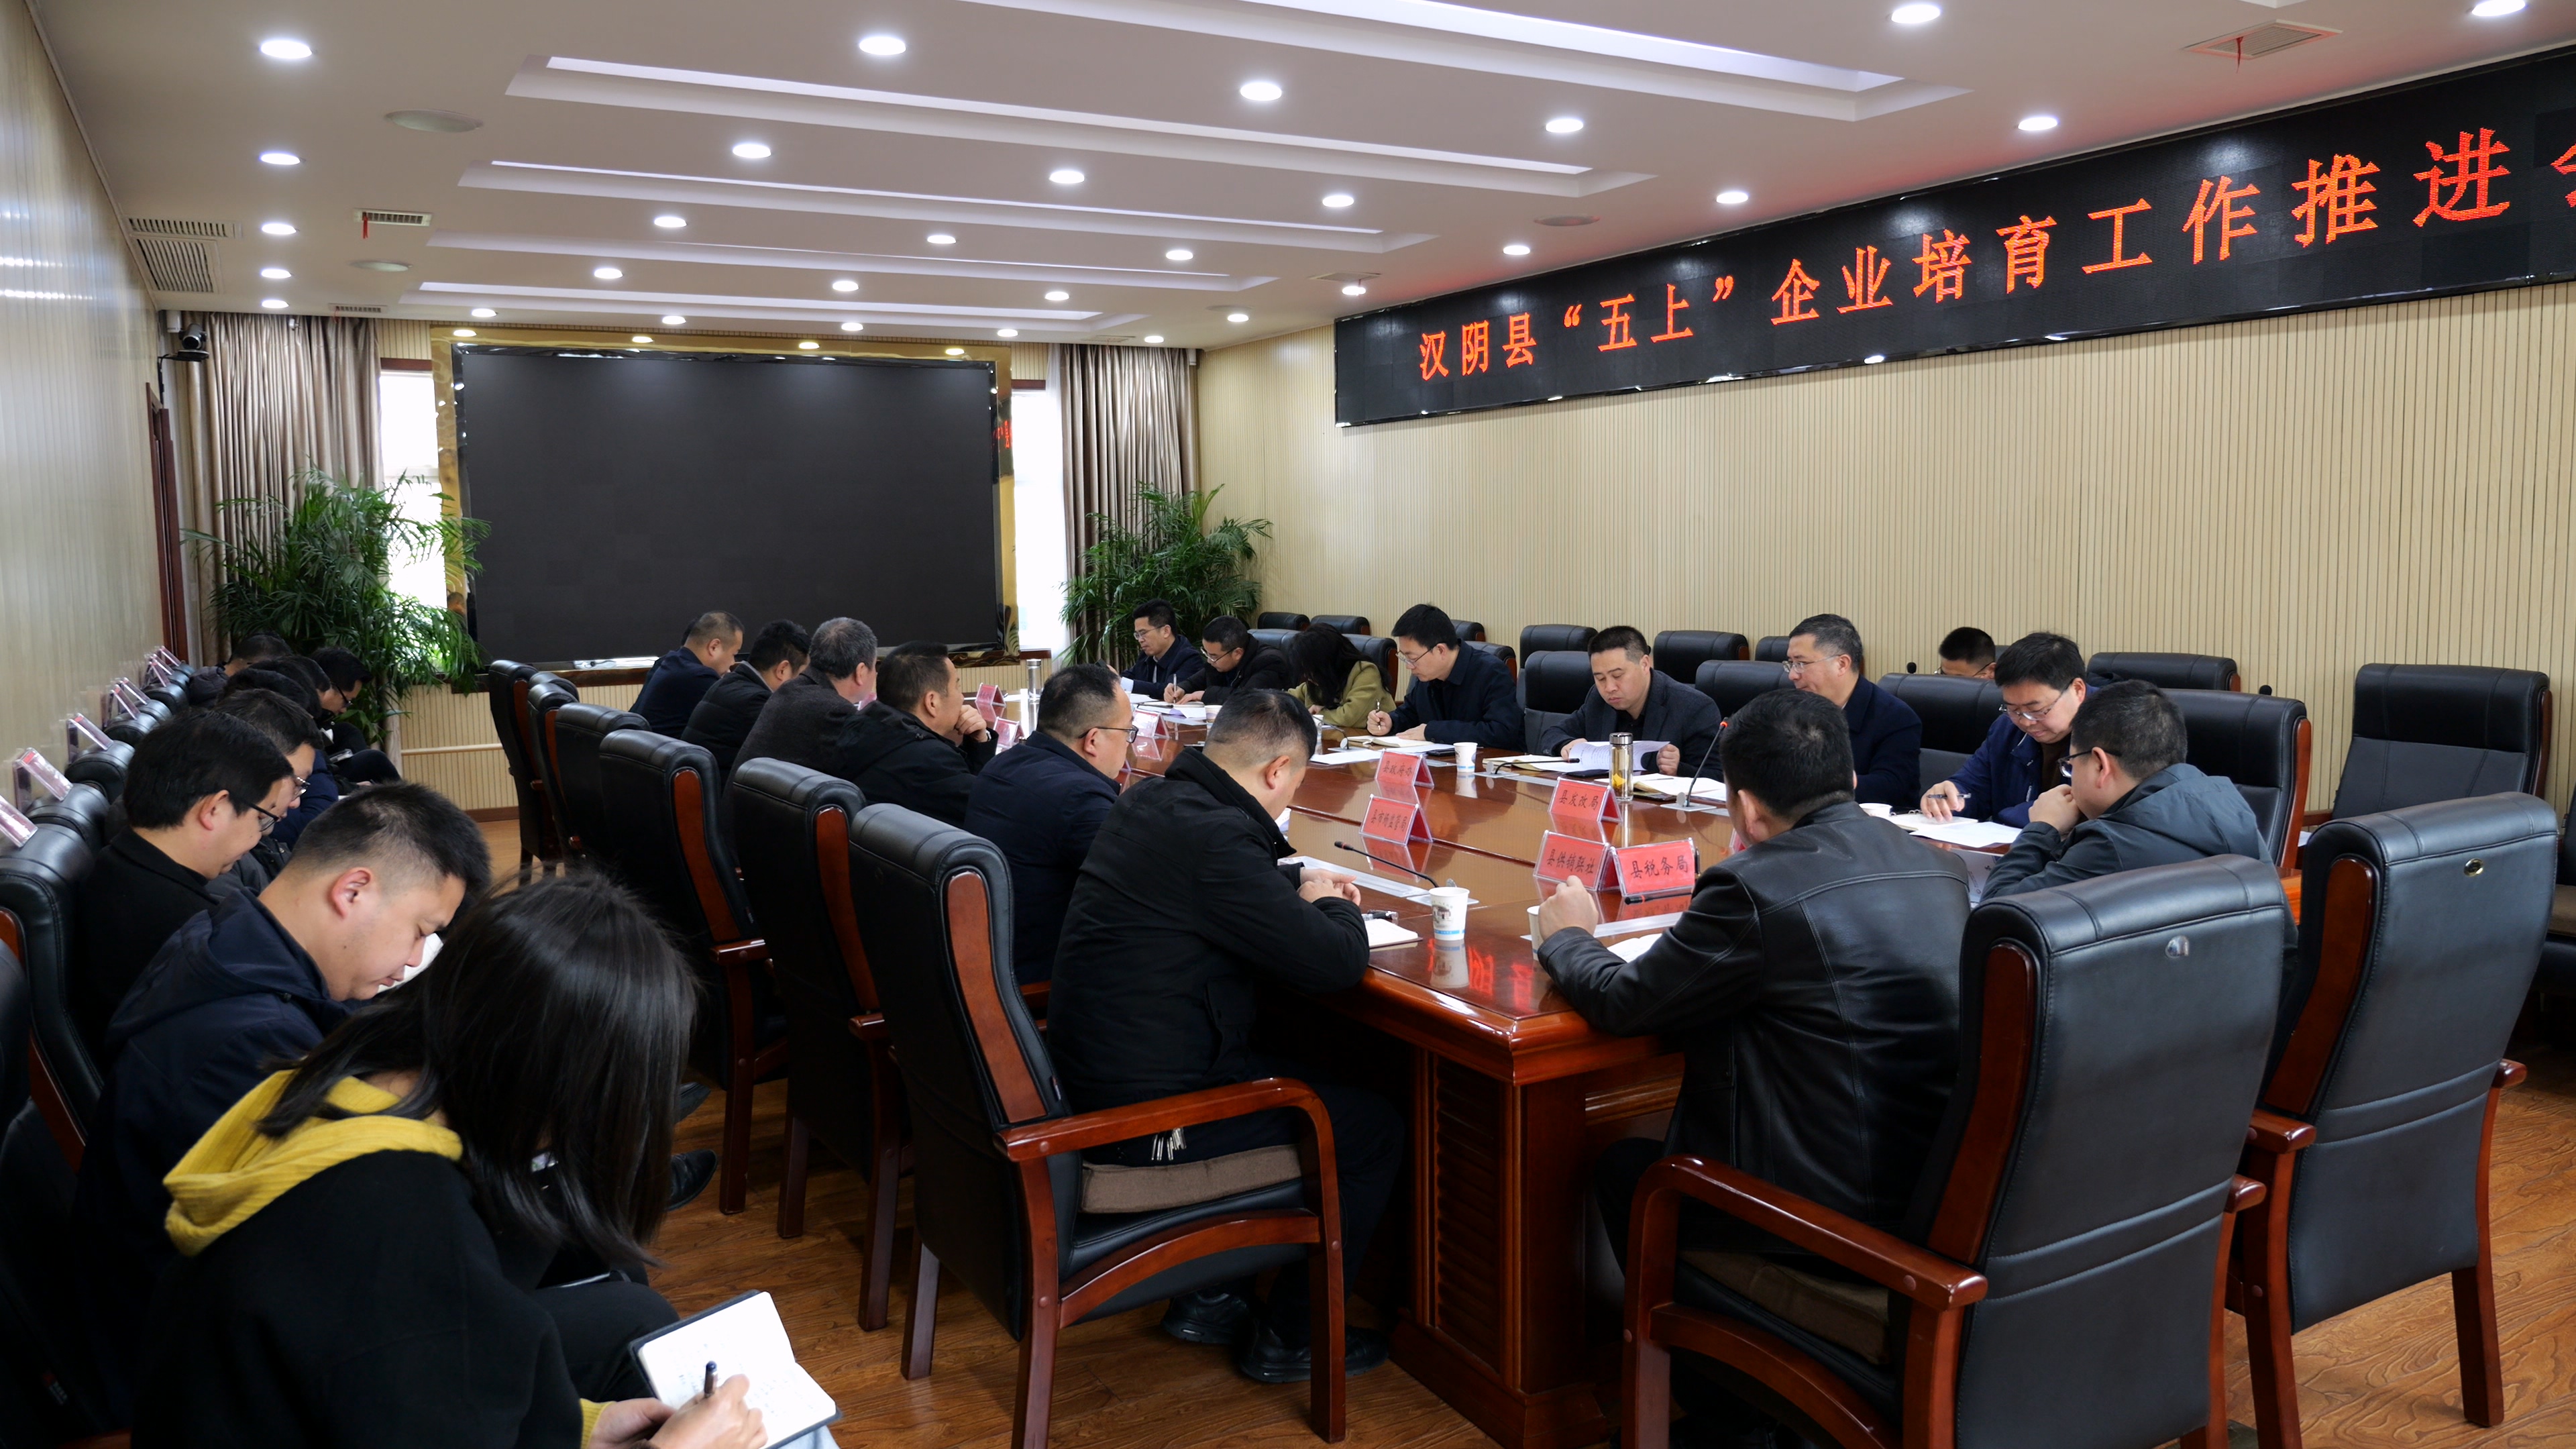 汉阴县召开“五上”企业培育工作推进会议